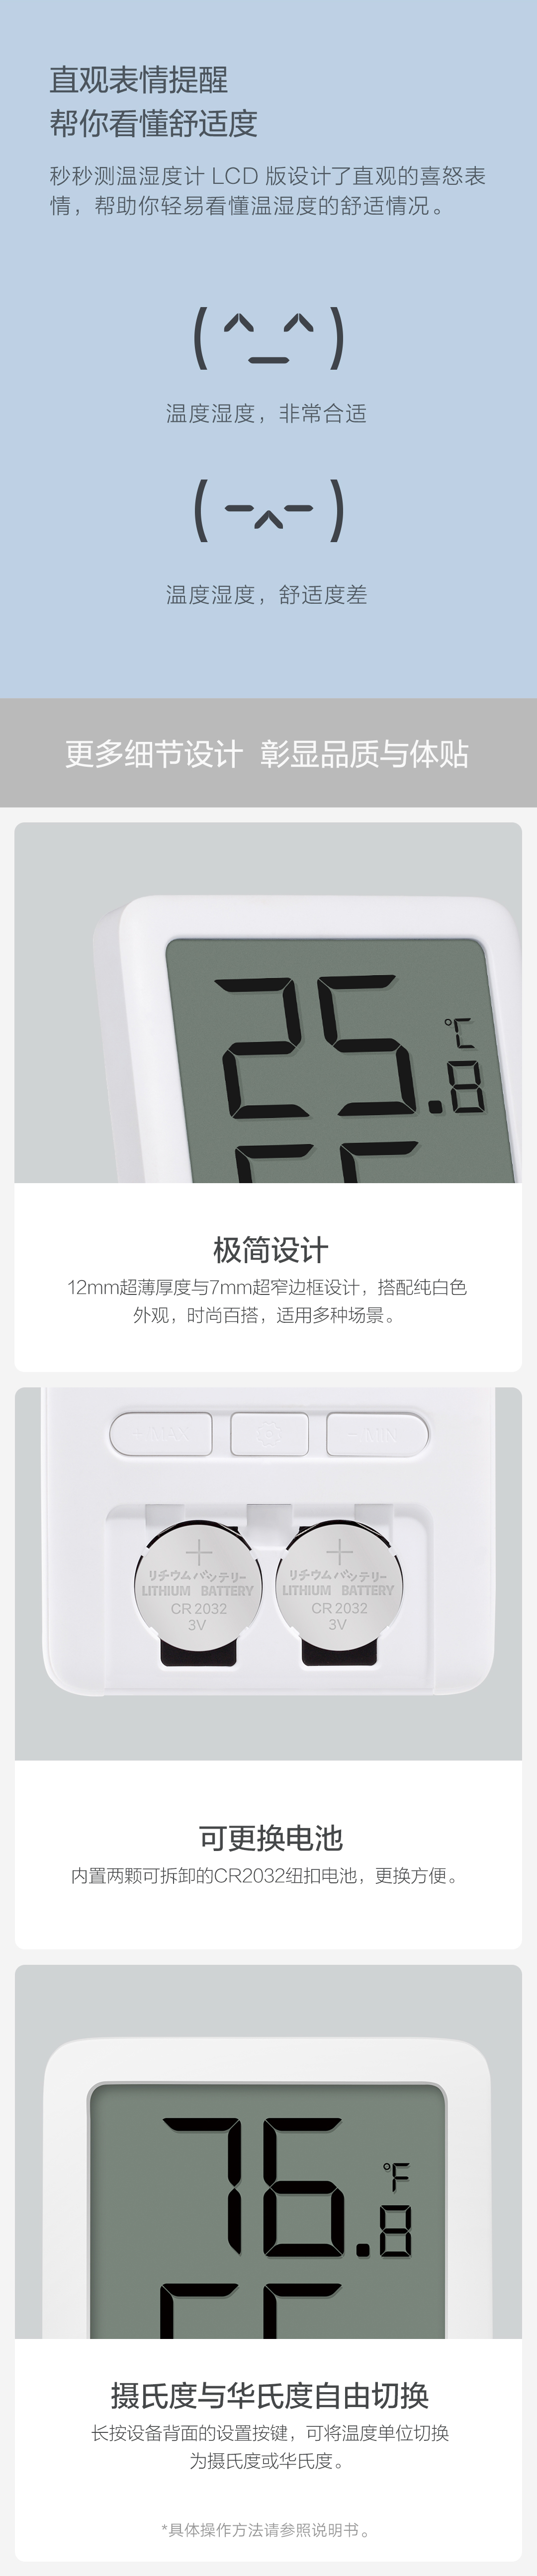 物果 秒秒测蓝牙温湿度计(LCD版) 温湿度传感器